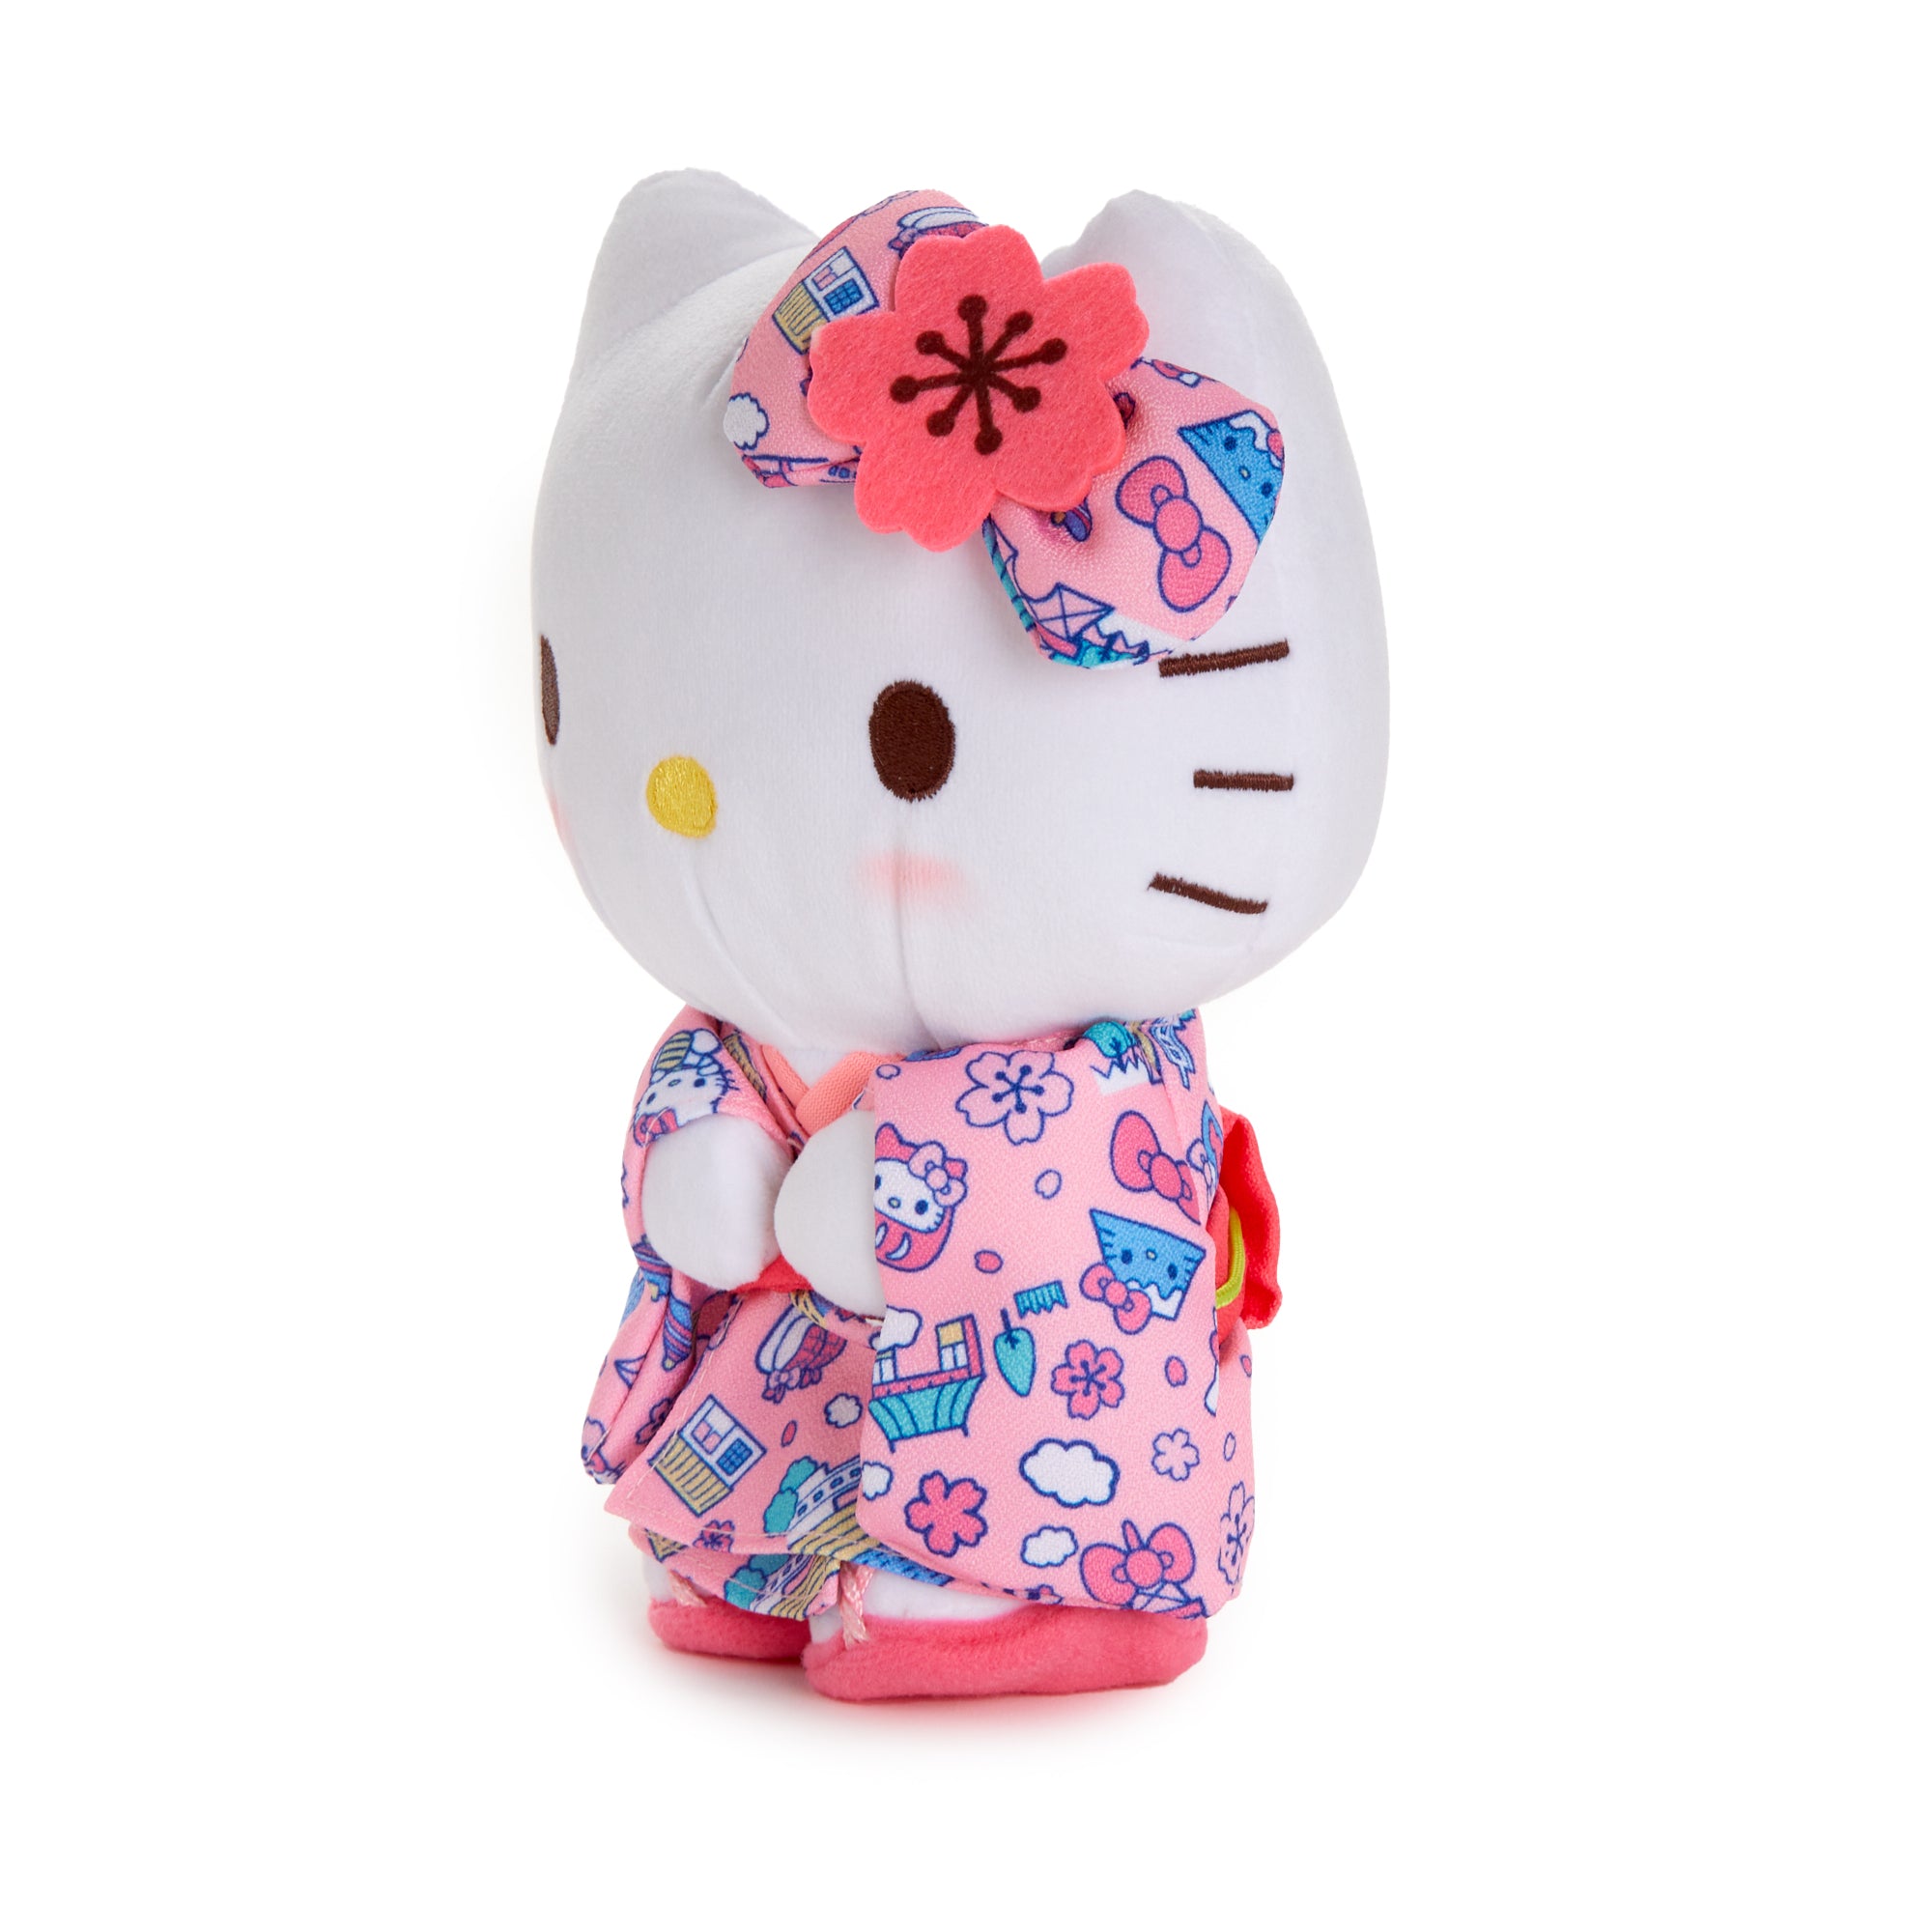 Hello Kitty Tokyo Kimono 8" Standing Plush (Sakura Series) Plush NAKAJIMA CORPORATION   